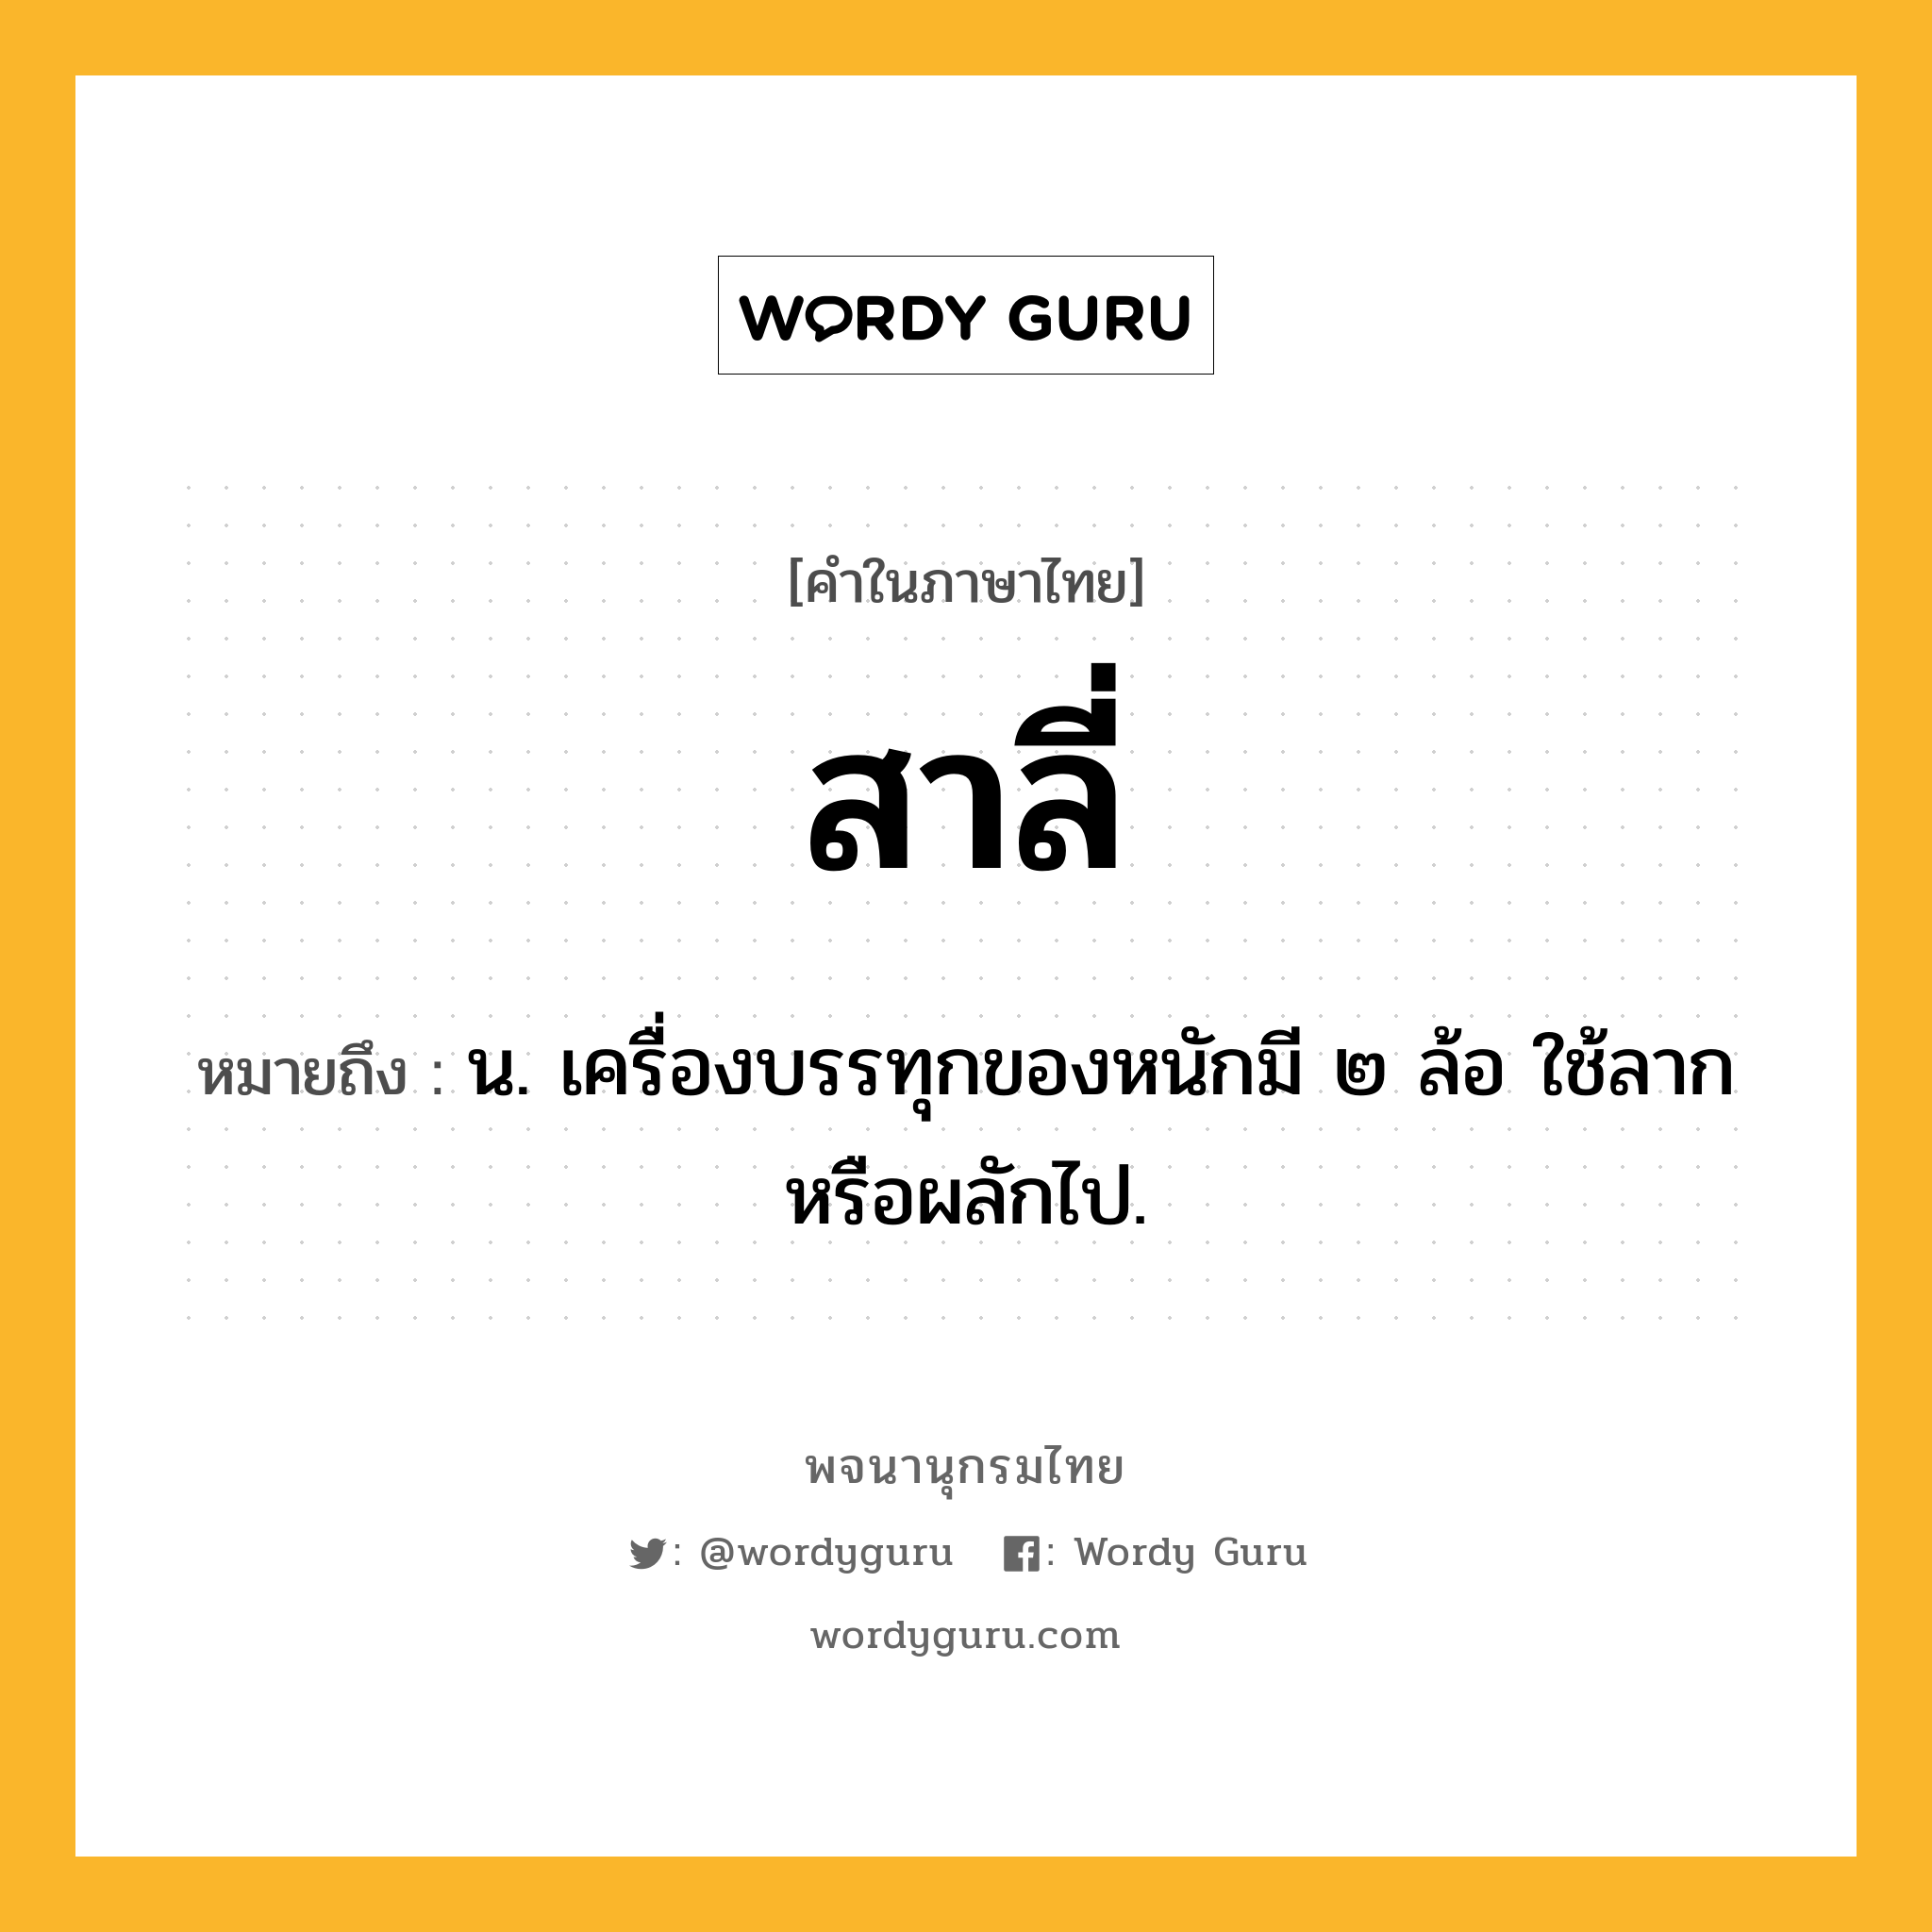 สาลี่ ความหมาย หมายถึงอะไร?, คำในภาษาไทย สาลี่ หมายถึง น. เครื่องบรรทุกของหนักมี ๒ ล้อ ใช้ลากหรือผลักไป.